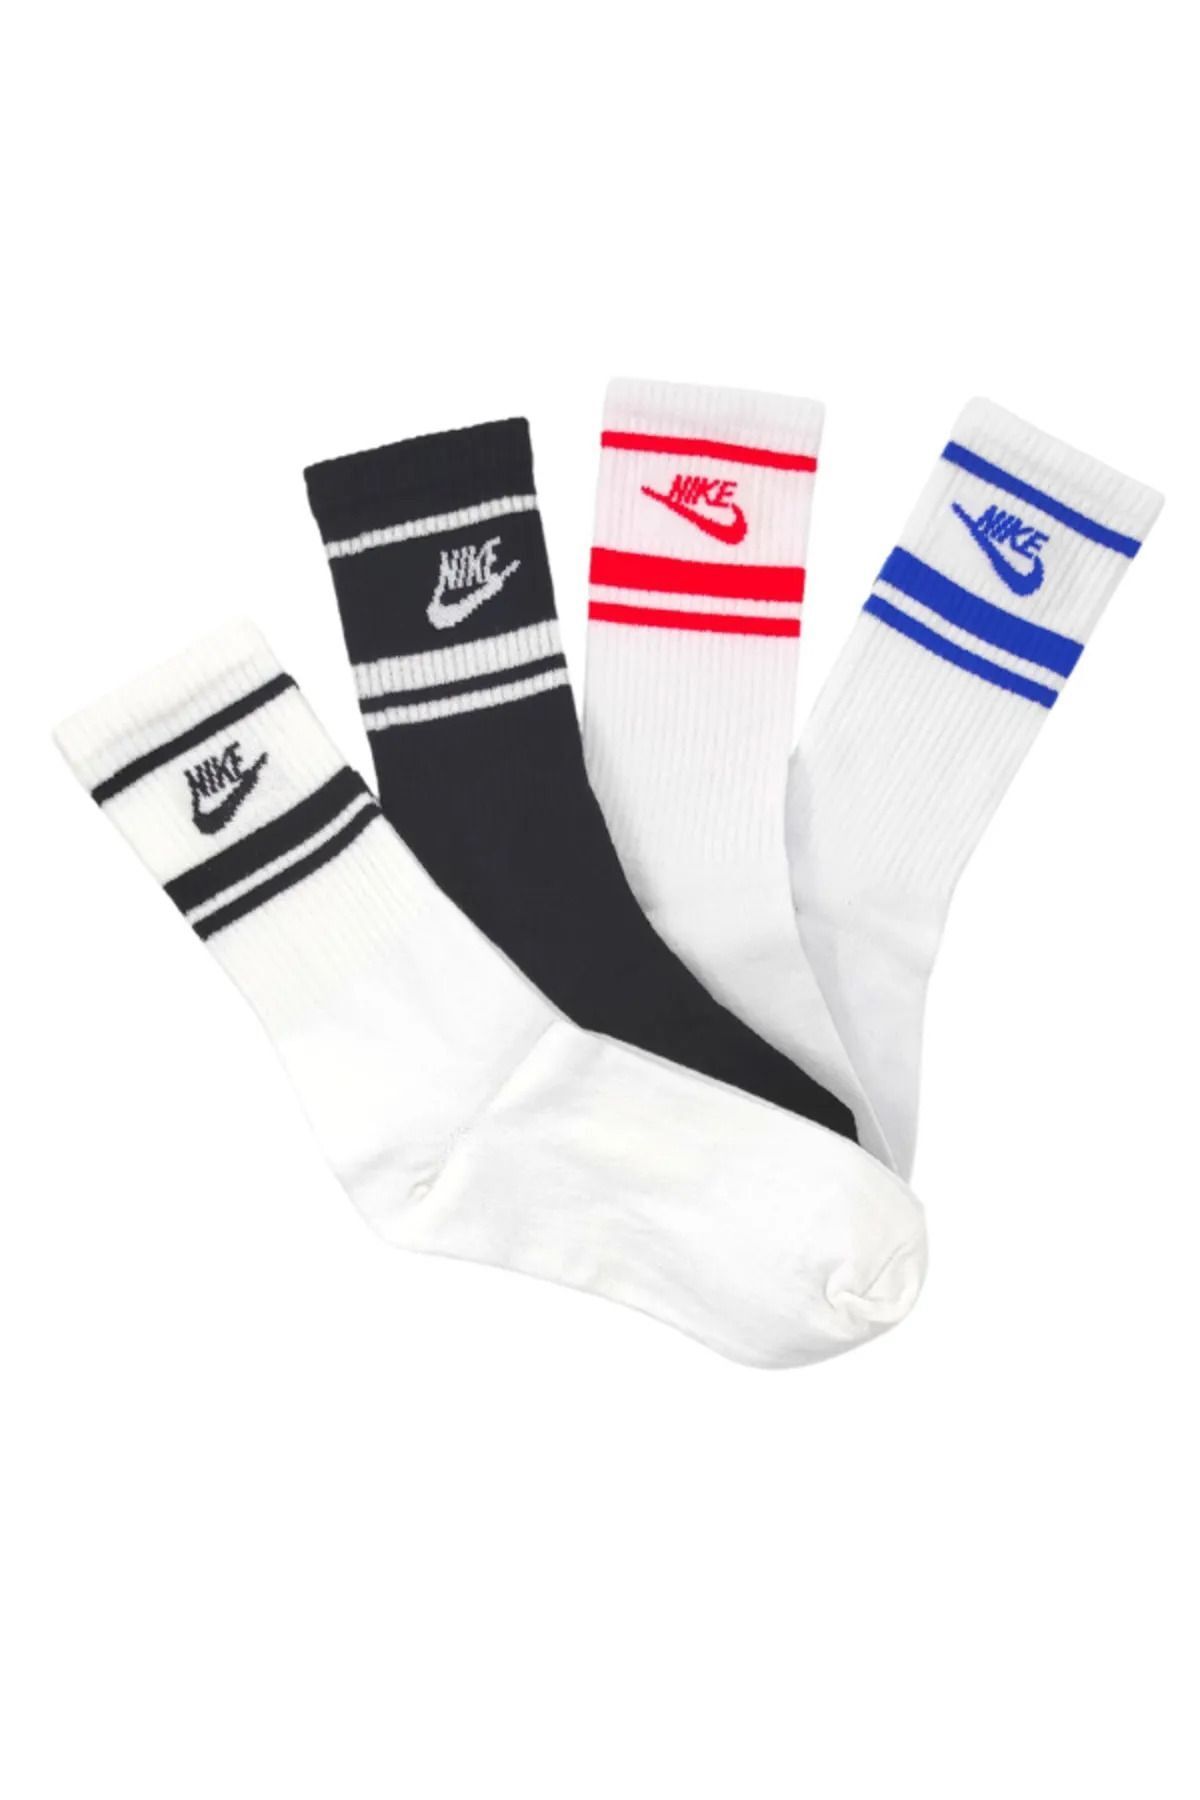 Socks Sirius 4 Çift Penye Essential Stripe Renkli Kadın/erkek Uzun Tenis Antrenman Spor Çorap Seti